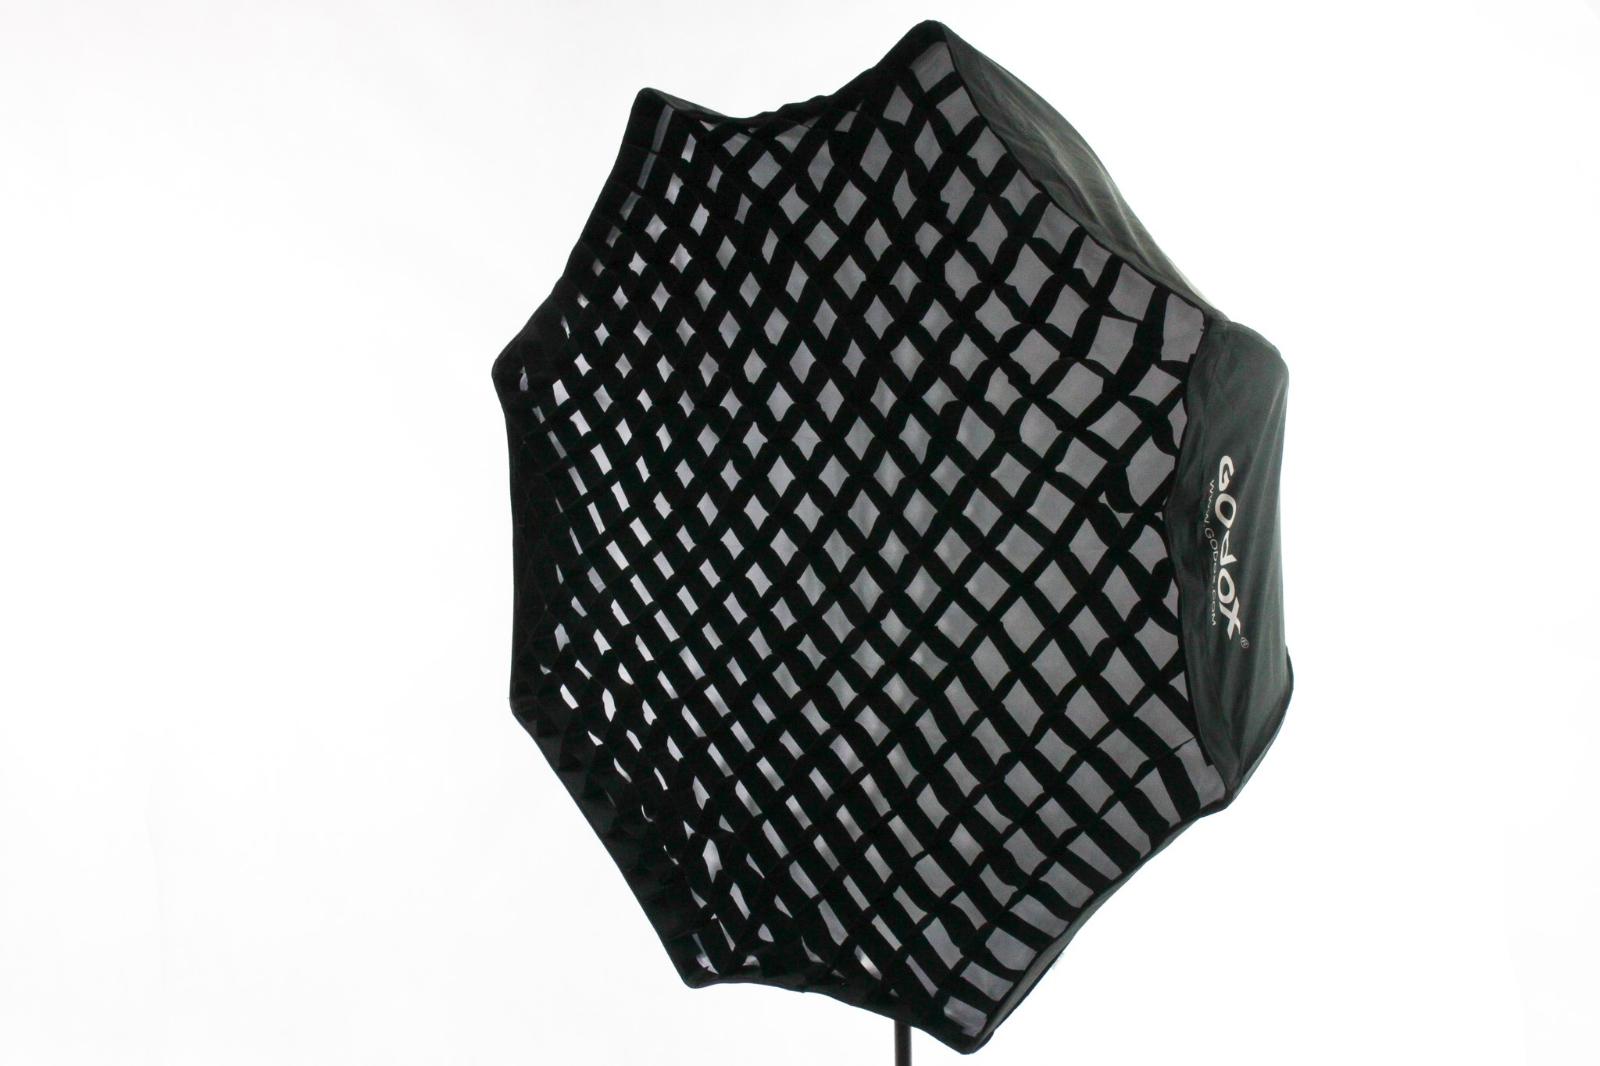 Softbox pre systémový blesk Octagon 120cm Godox Honeycomb komplet - Foto príslušenstvo